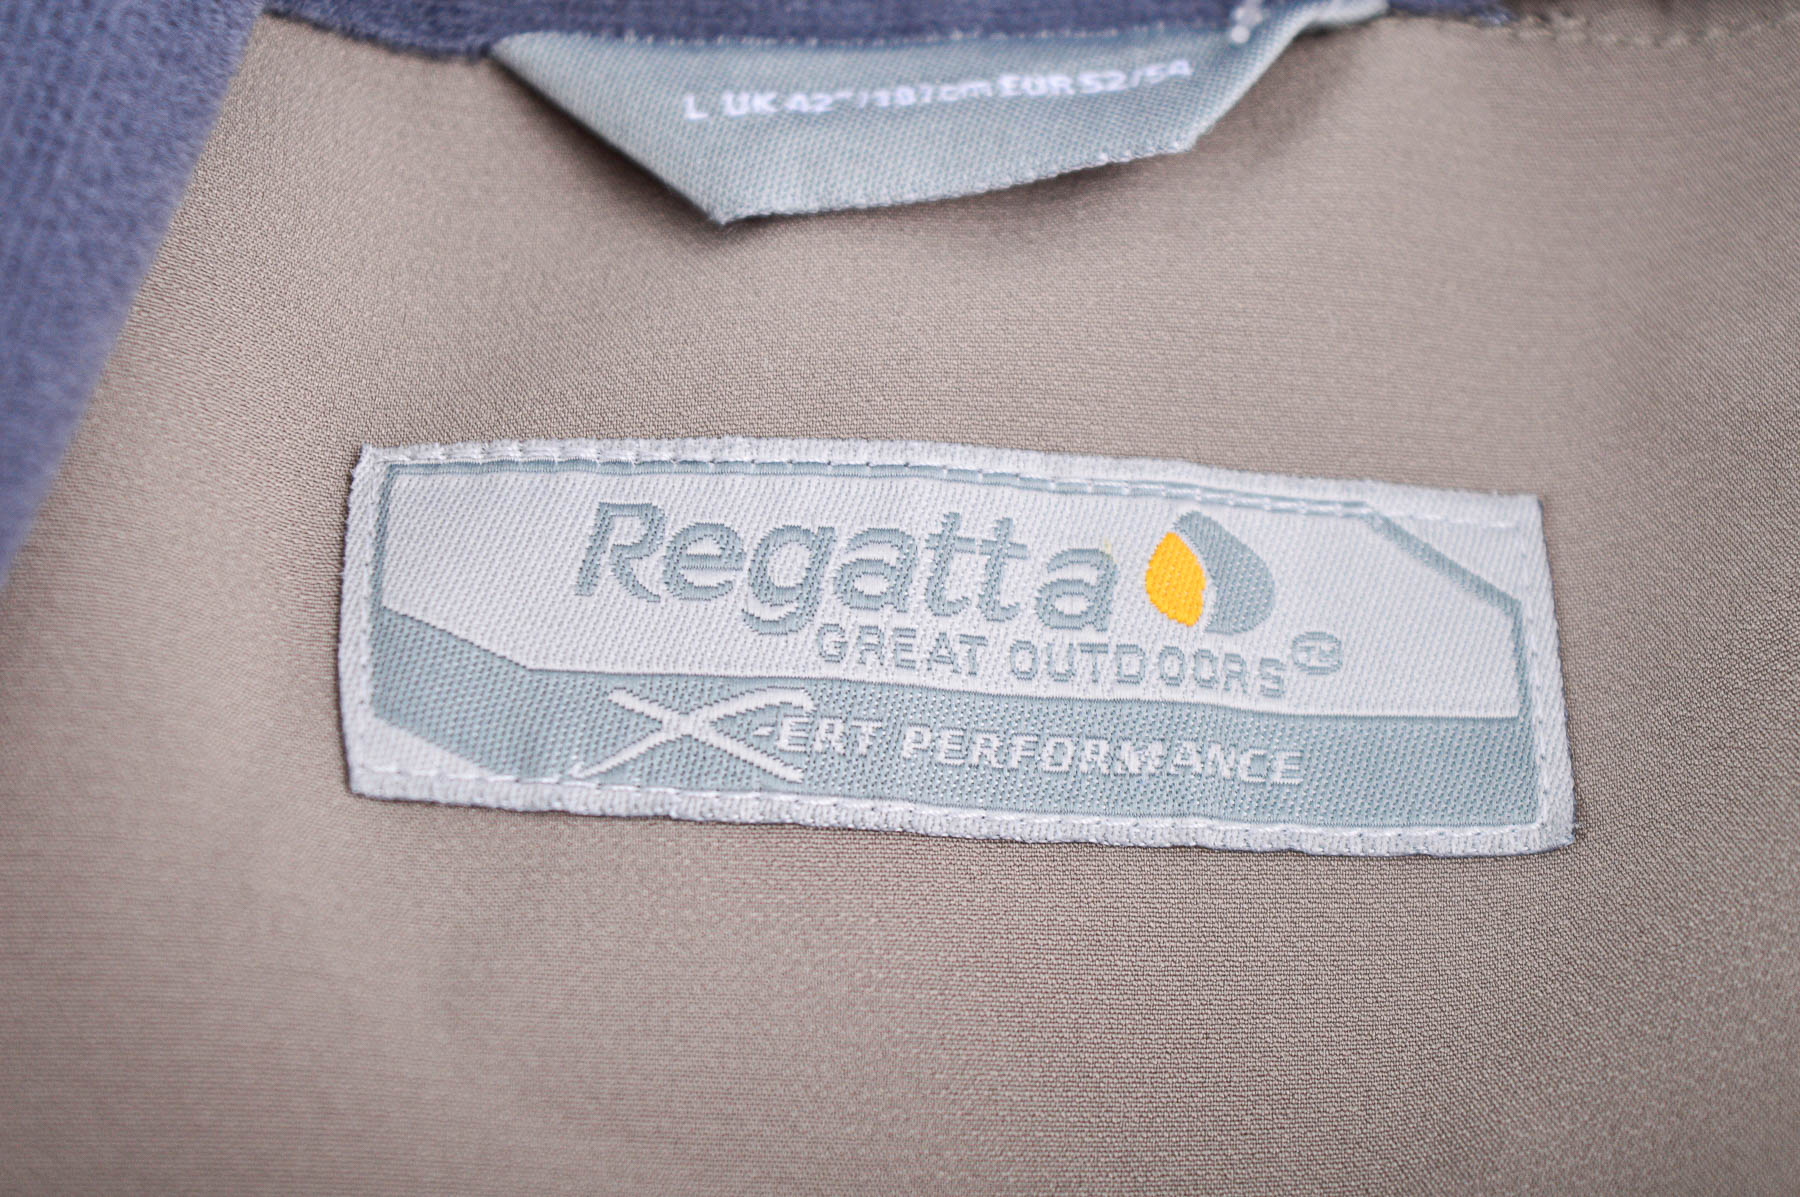 Αθλητική μπλούζα ανδρών - Regatta - 2